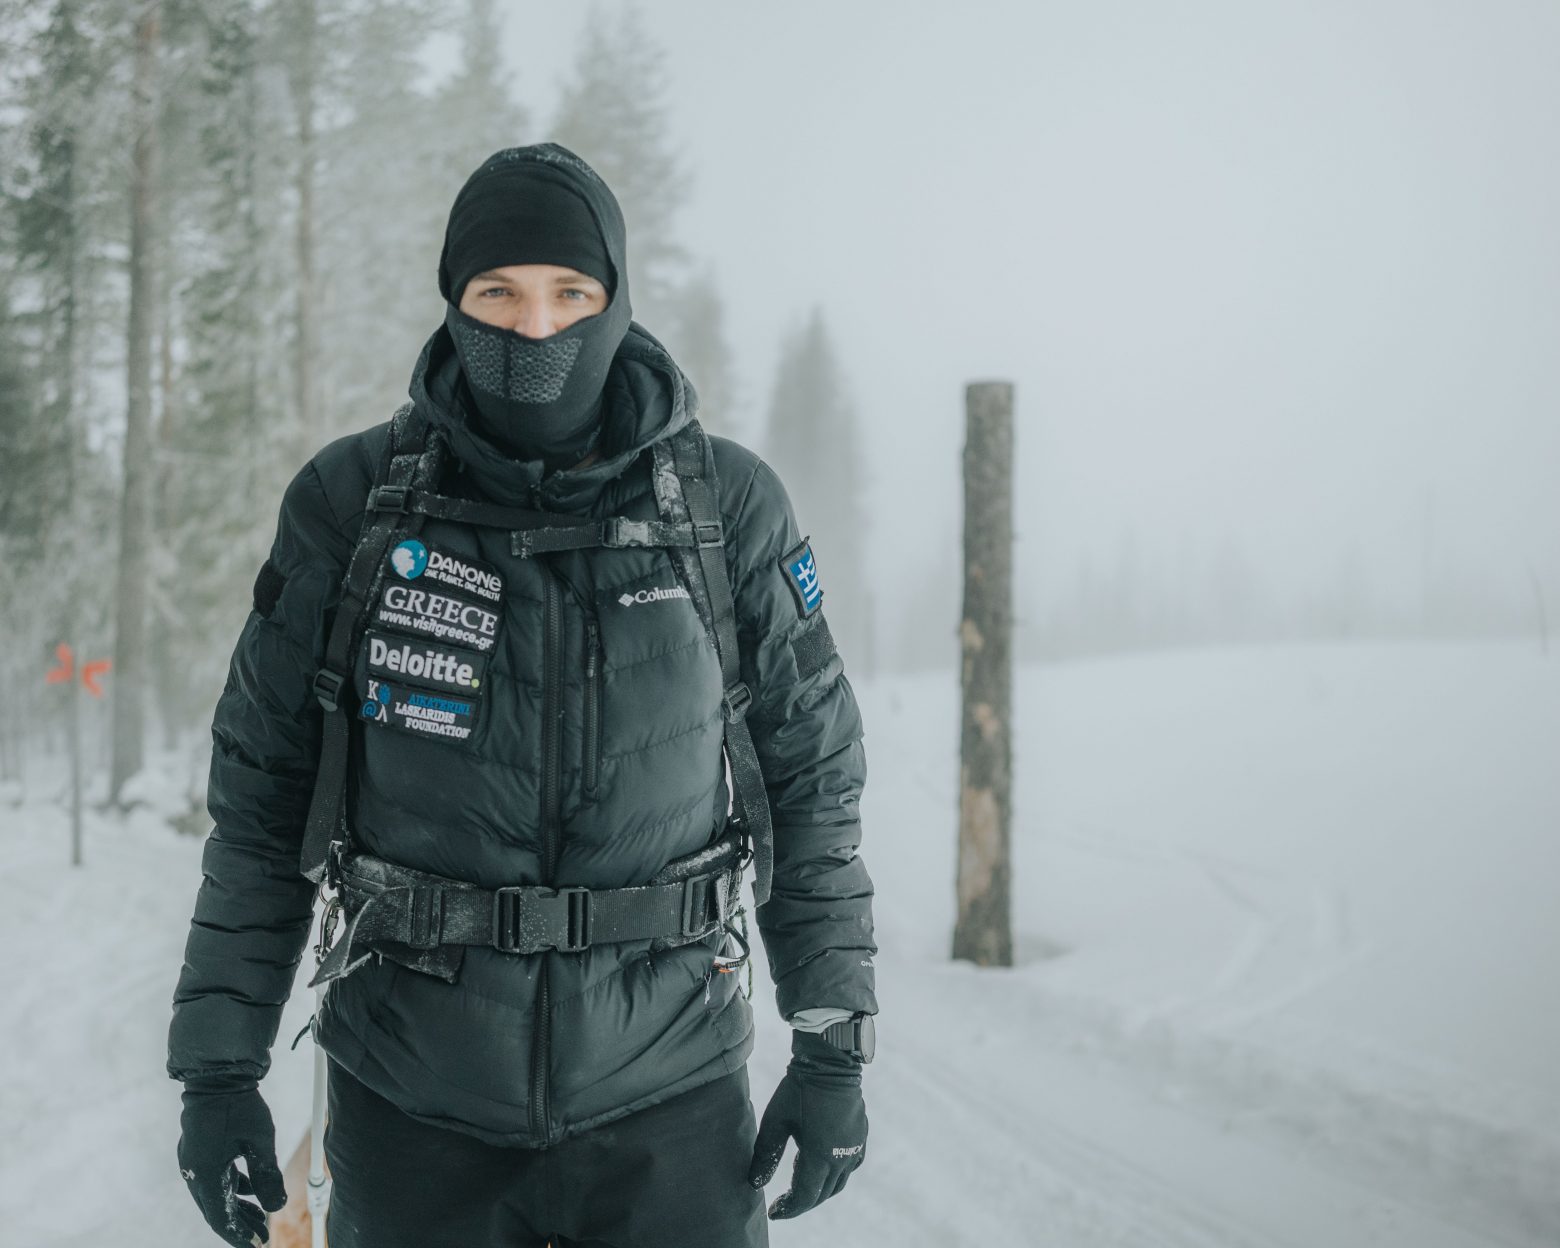 Ο Μάριος Γιαννάκου έτρεξε 500 χιλιόμετρα στους πάγους της Αρκτικής – και άλλαξε τη διατροφή του για να σώσει τον πλανήτη